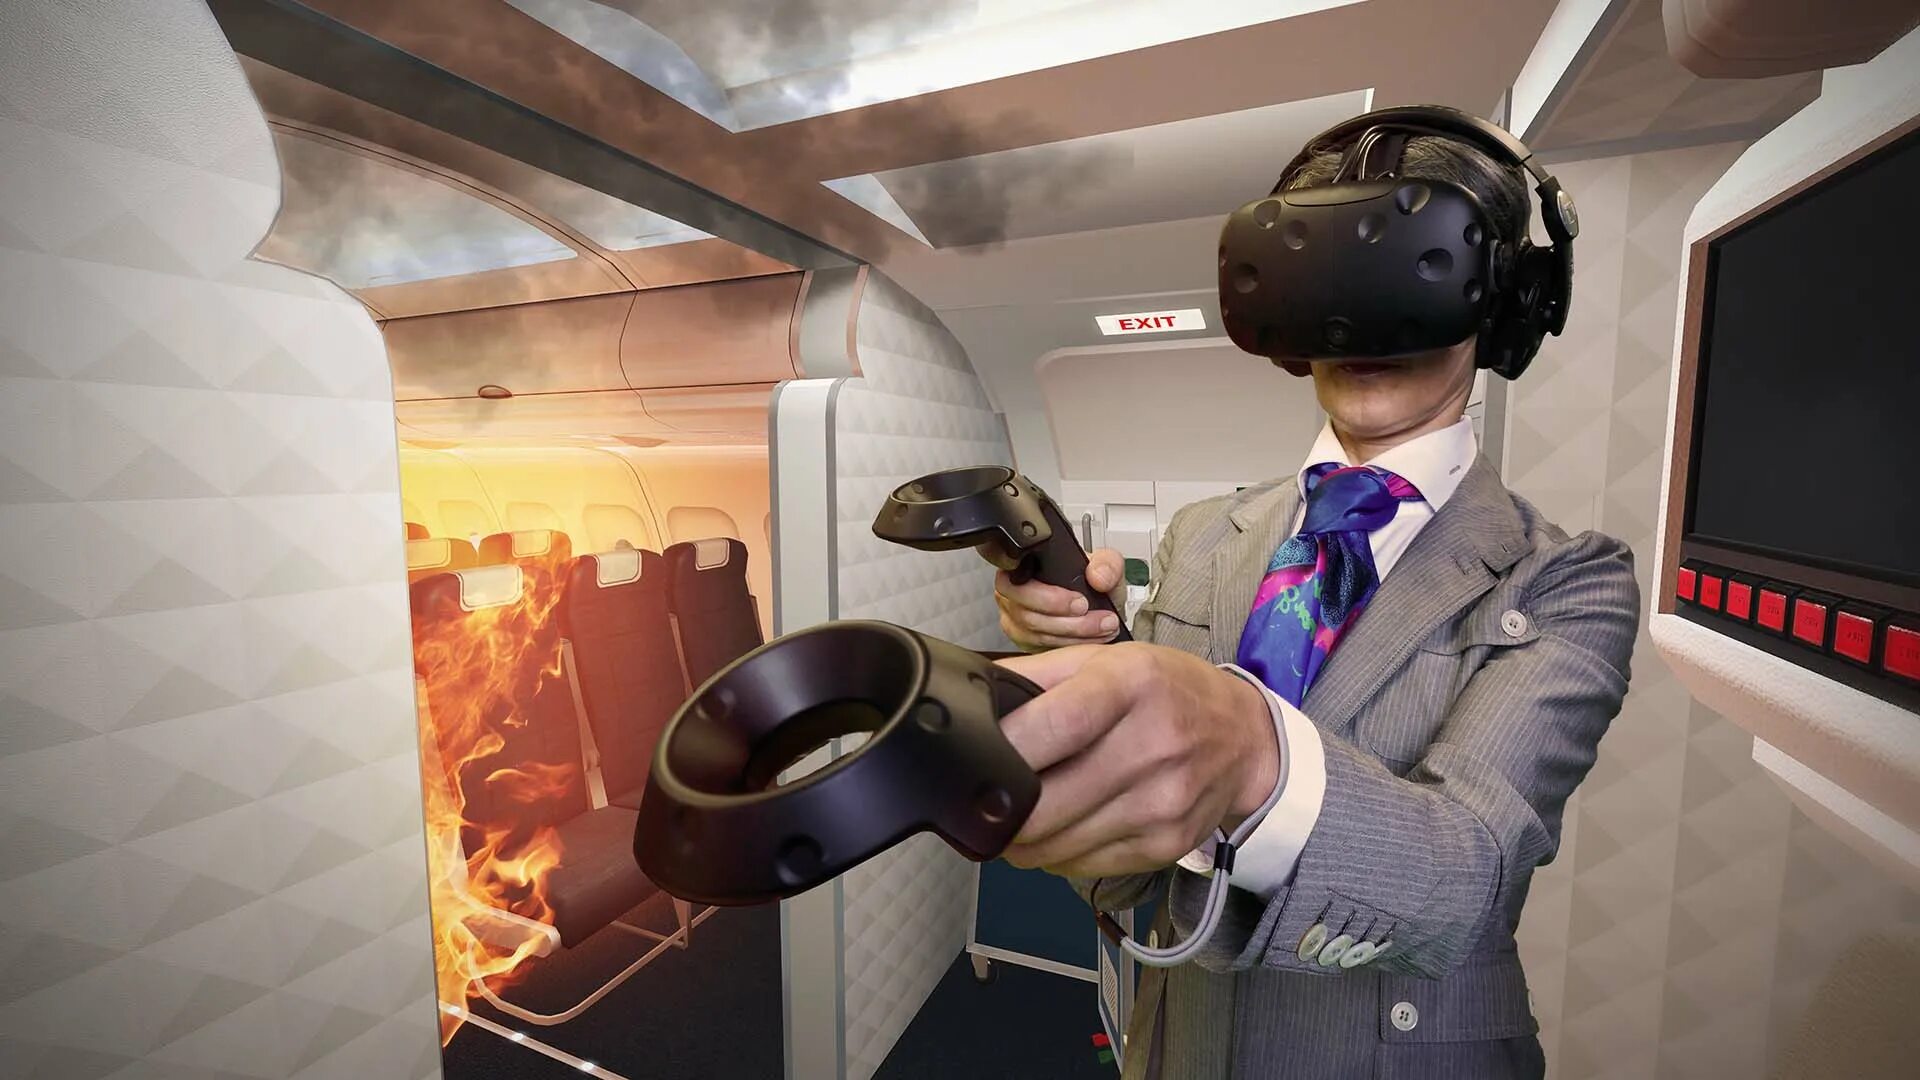 Vr пол. Технологии виртуальной реальности. Пожар в виртуальной реальности. VR полет. Виртуальная реальность арт.